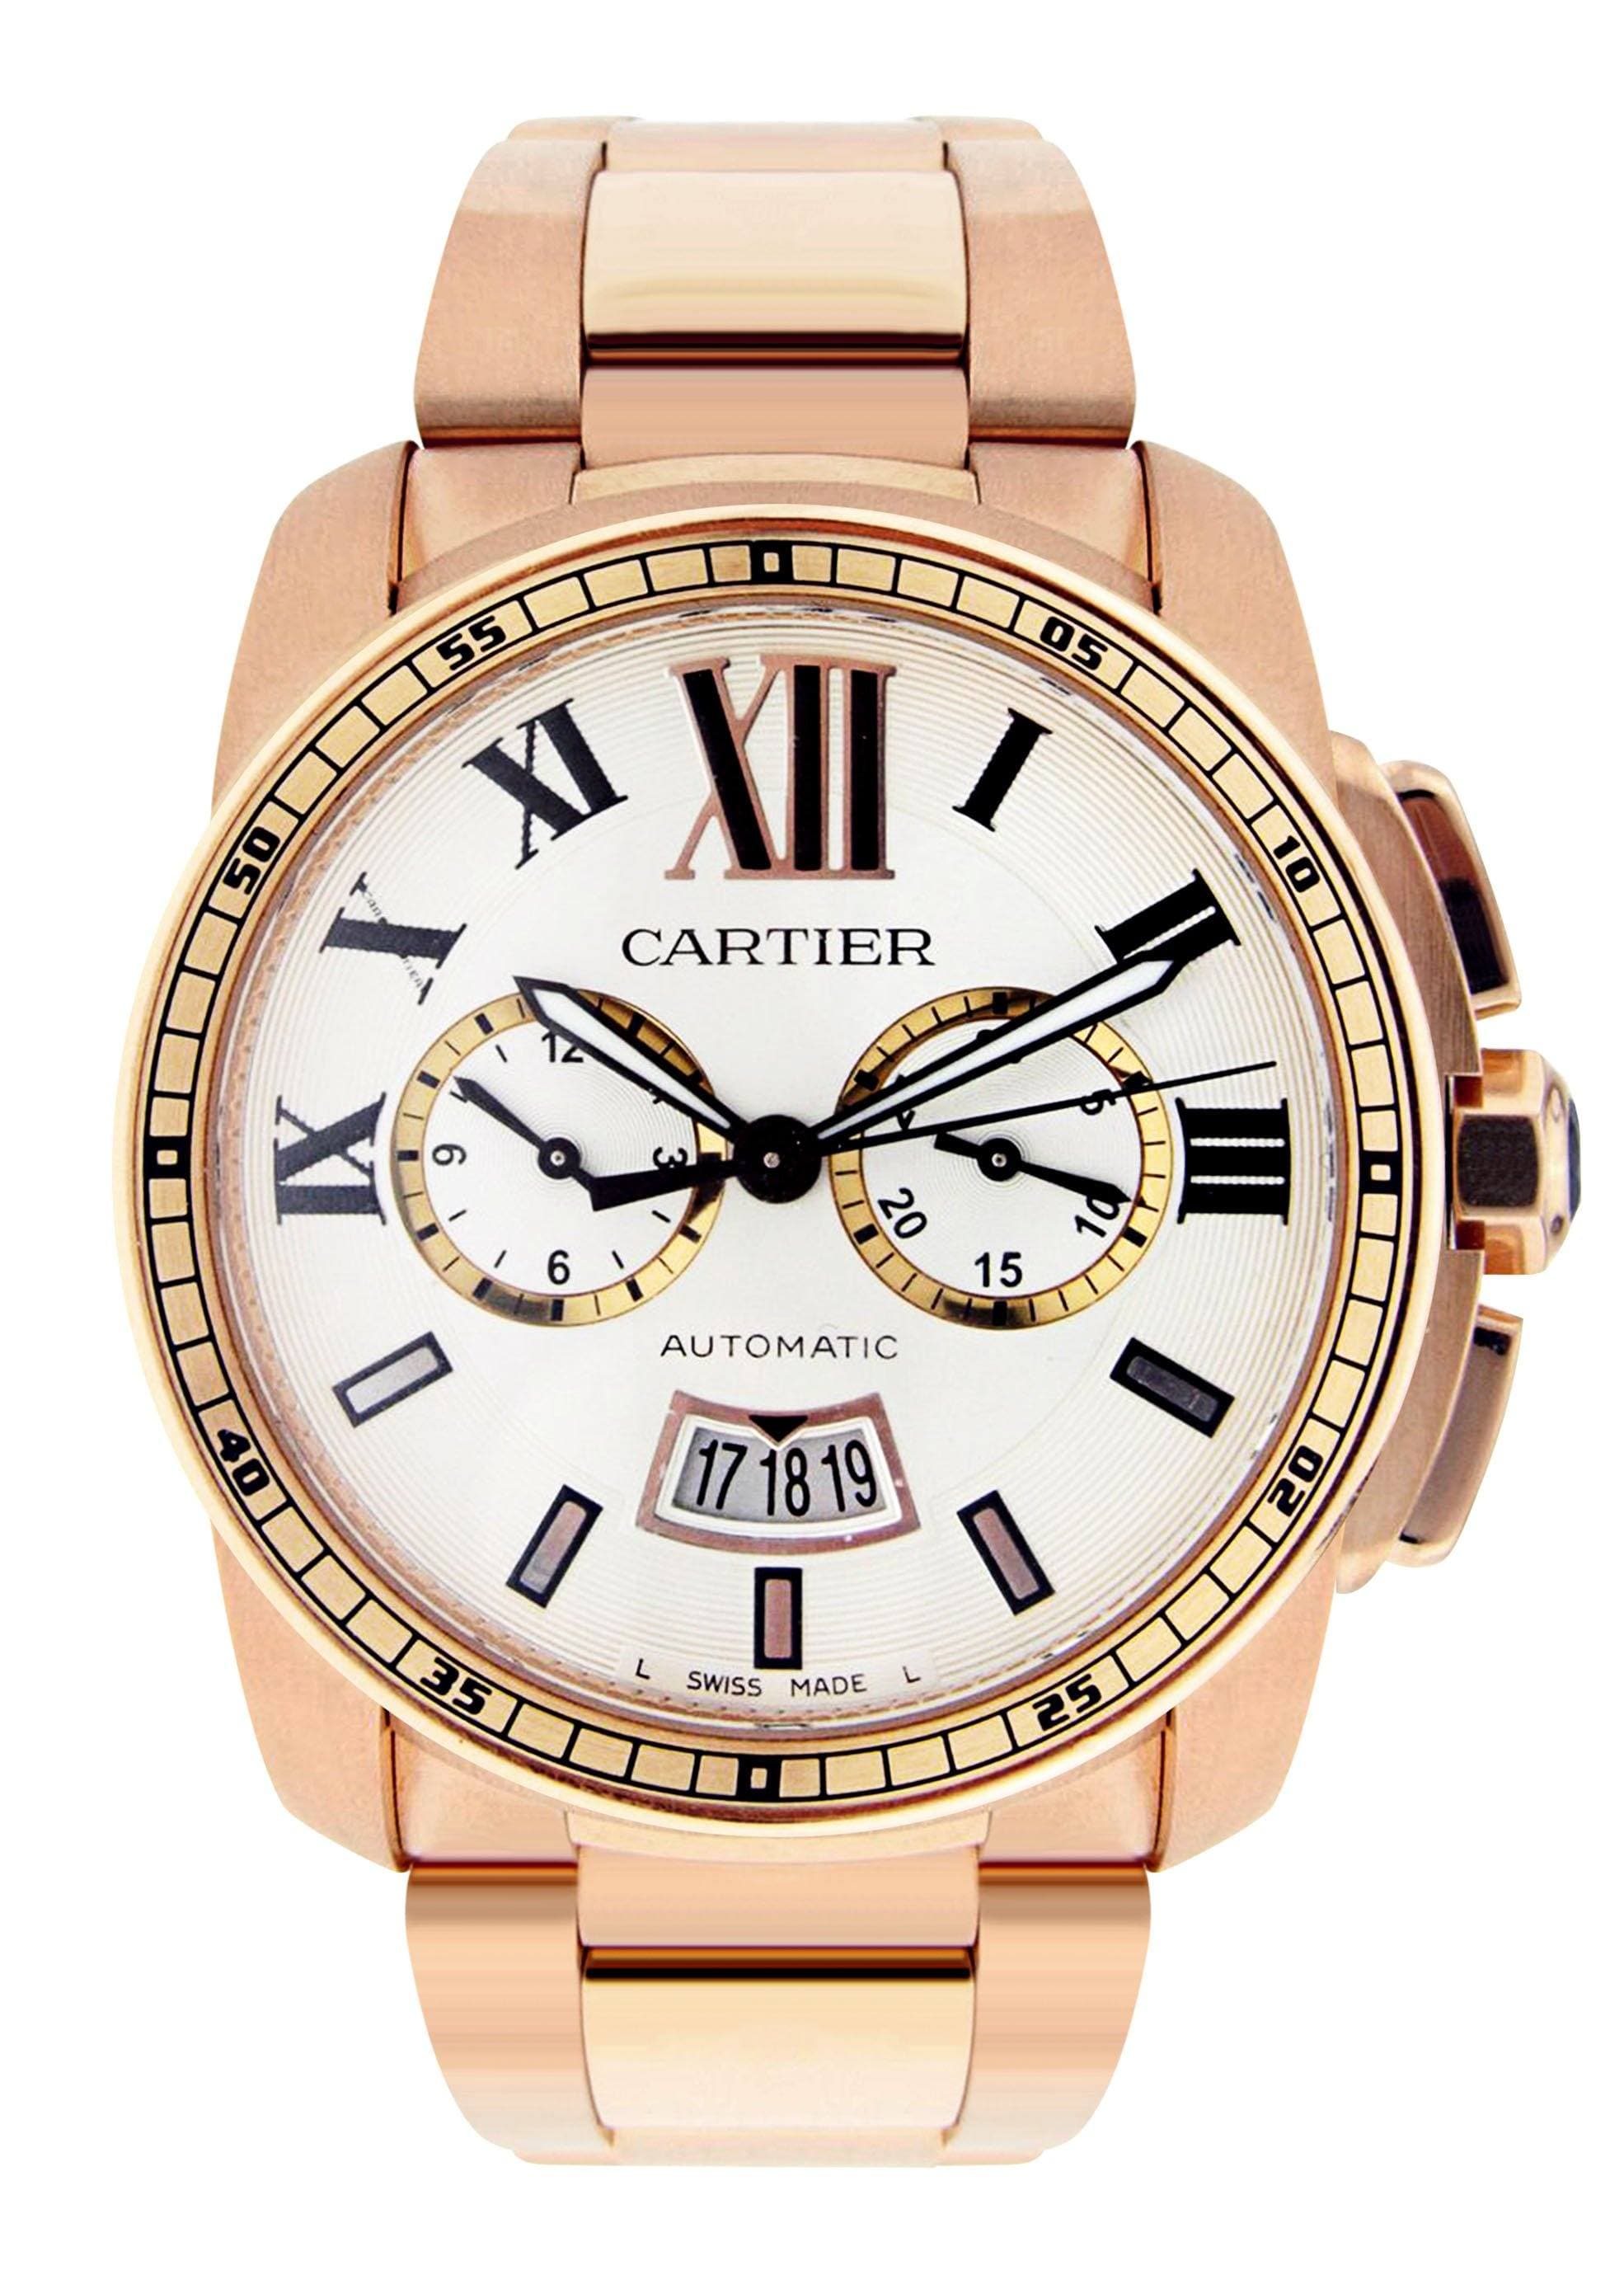 customize your cartier calibre watch dials